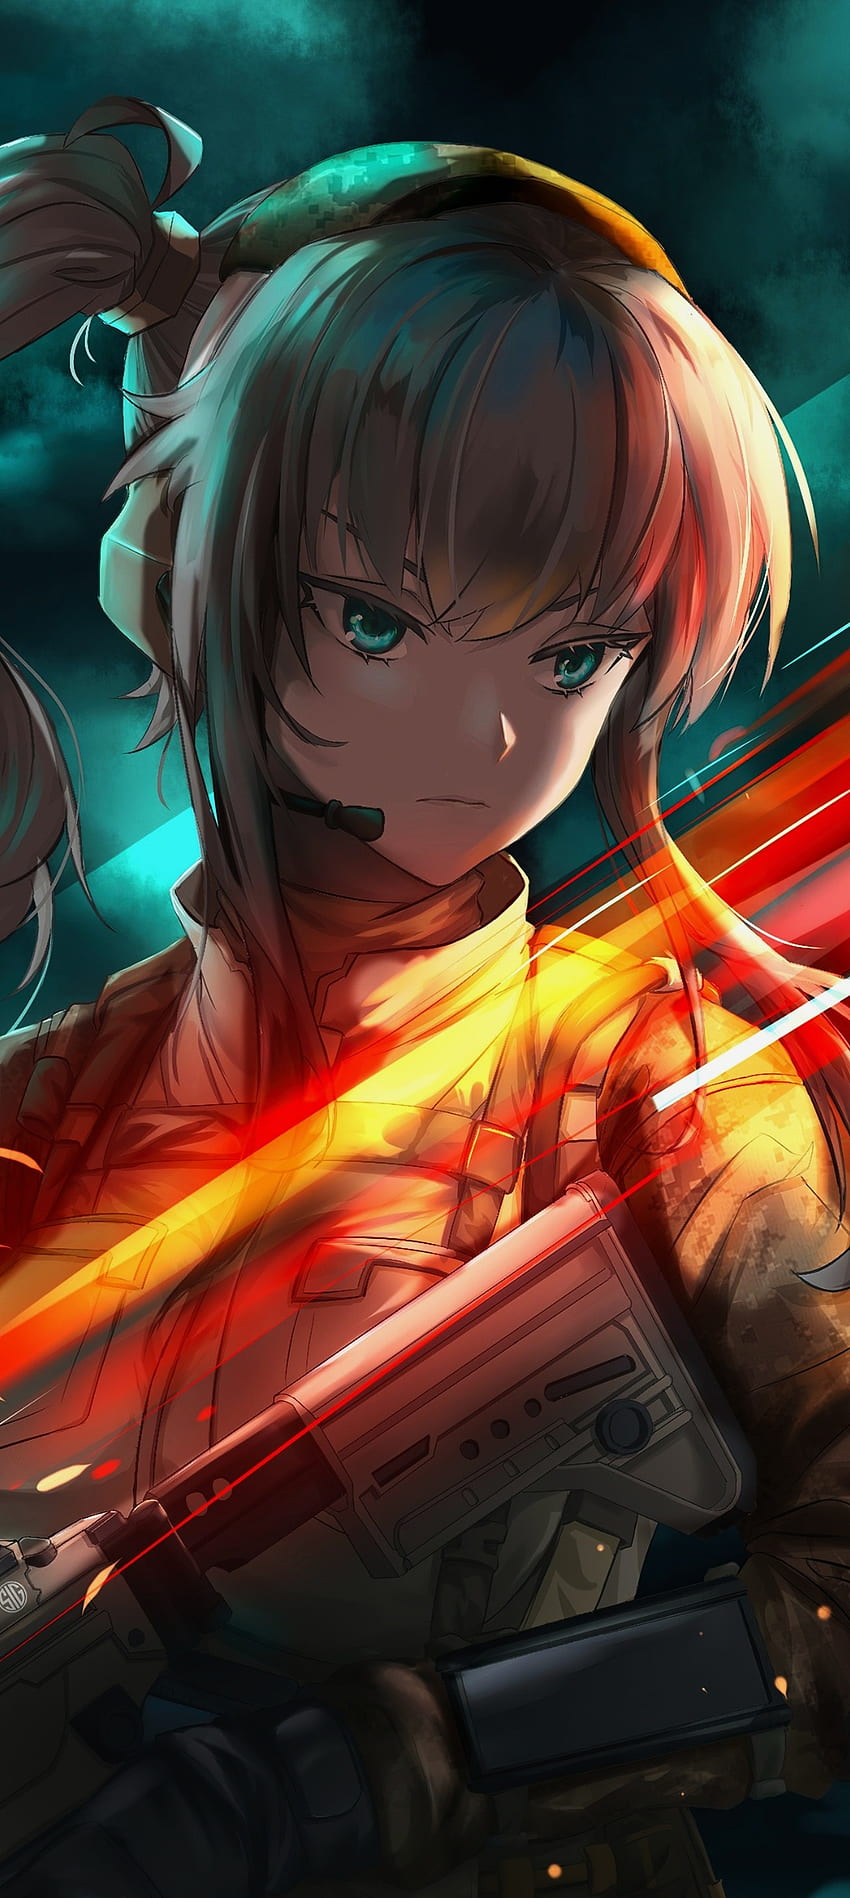 Anime Girl, SAO, gun, art, game, nature, battlefield, fan-art HD phone wallpaper